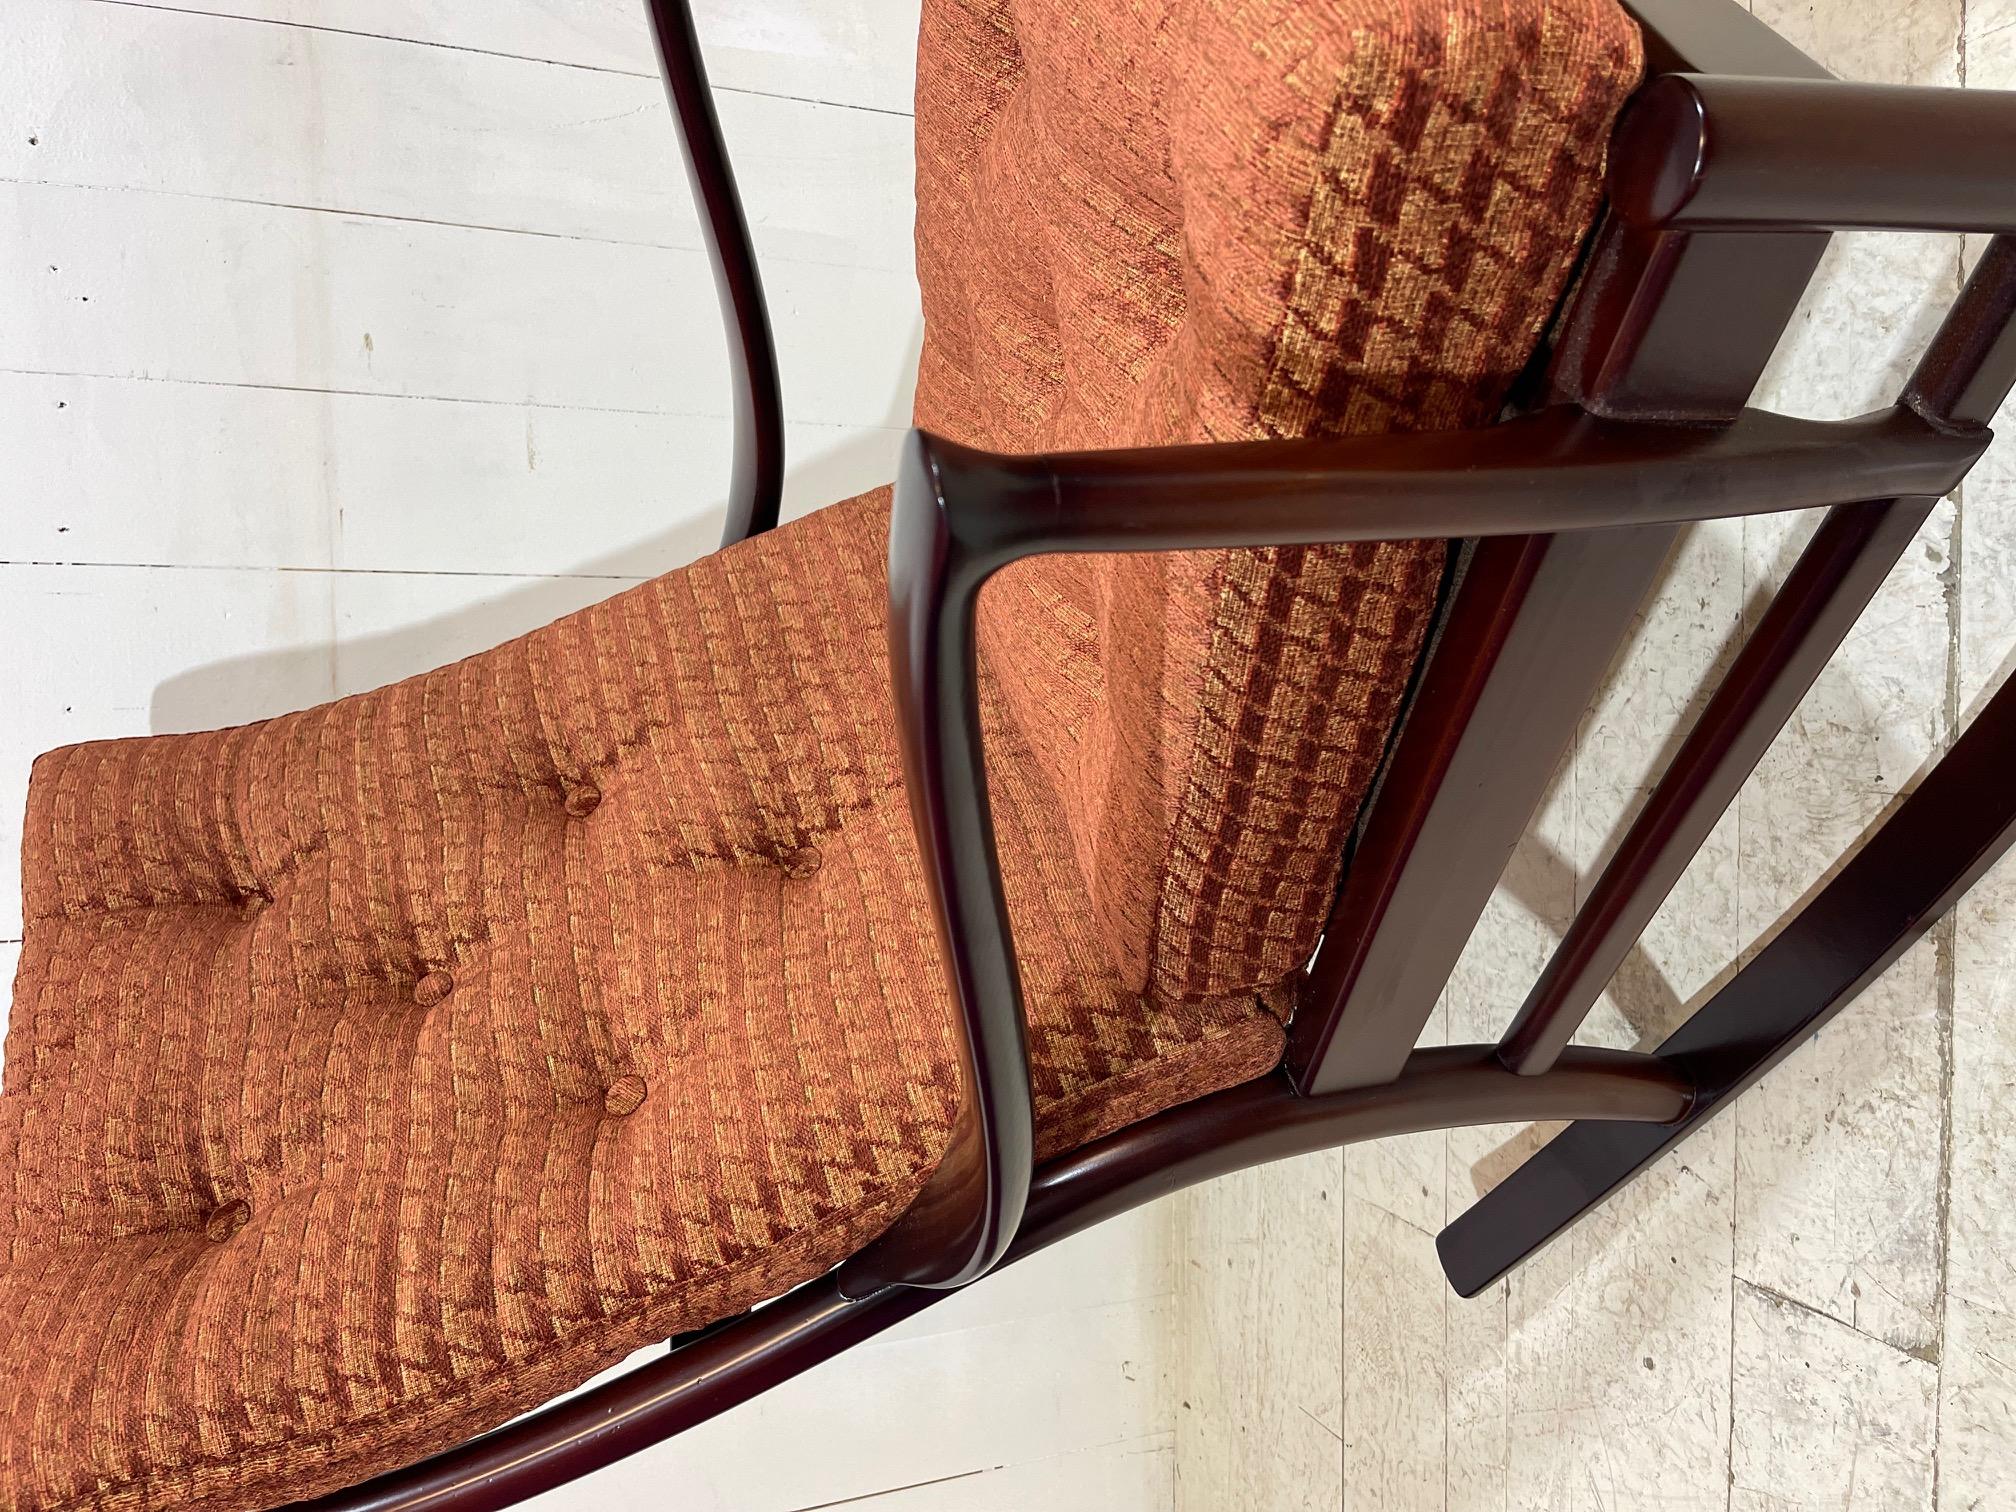 Embarquez pour un voyage dans l'élégance du milieu du siècle avec l'offre exclusive de The Rare Chair Company - le Parker Knoll Rocking Chair du milieu du siècle, restauré de manière exquise. Chef-d'œuvre du passé, cette pièce emblématique présente